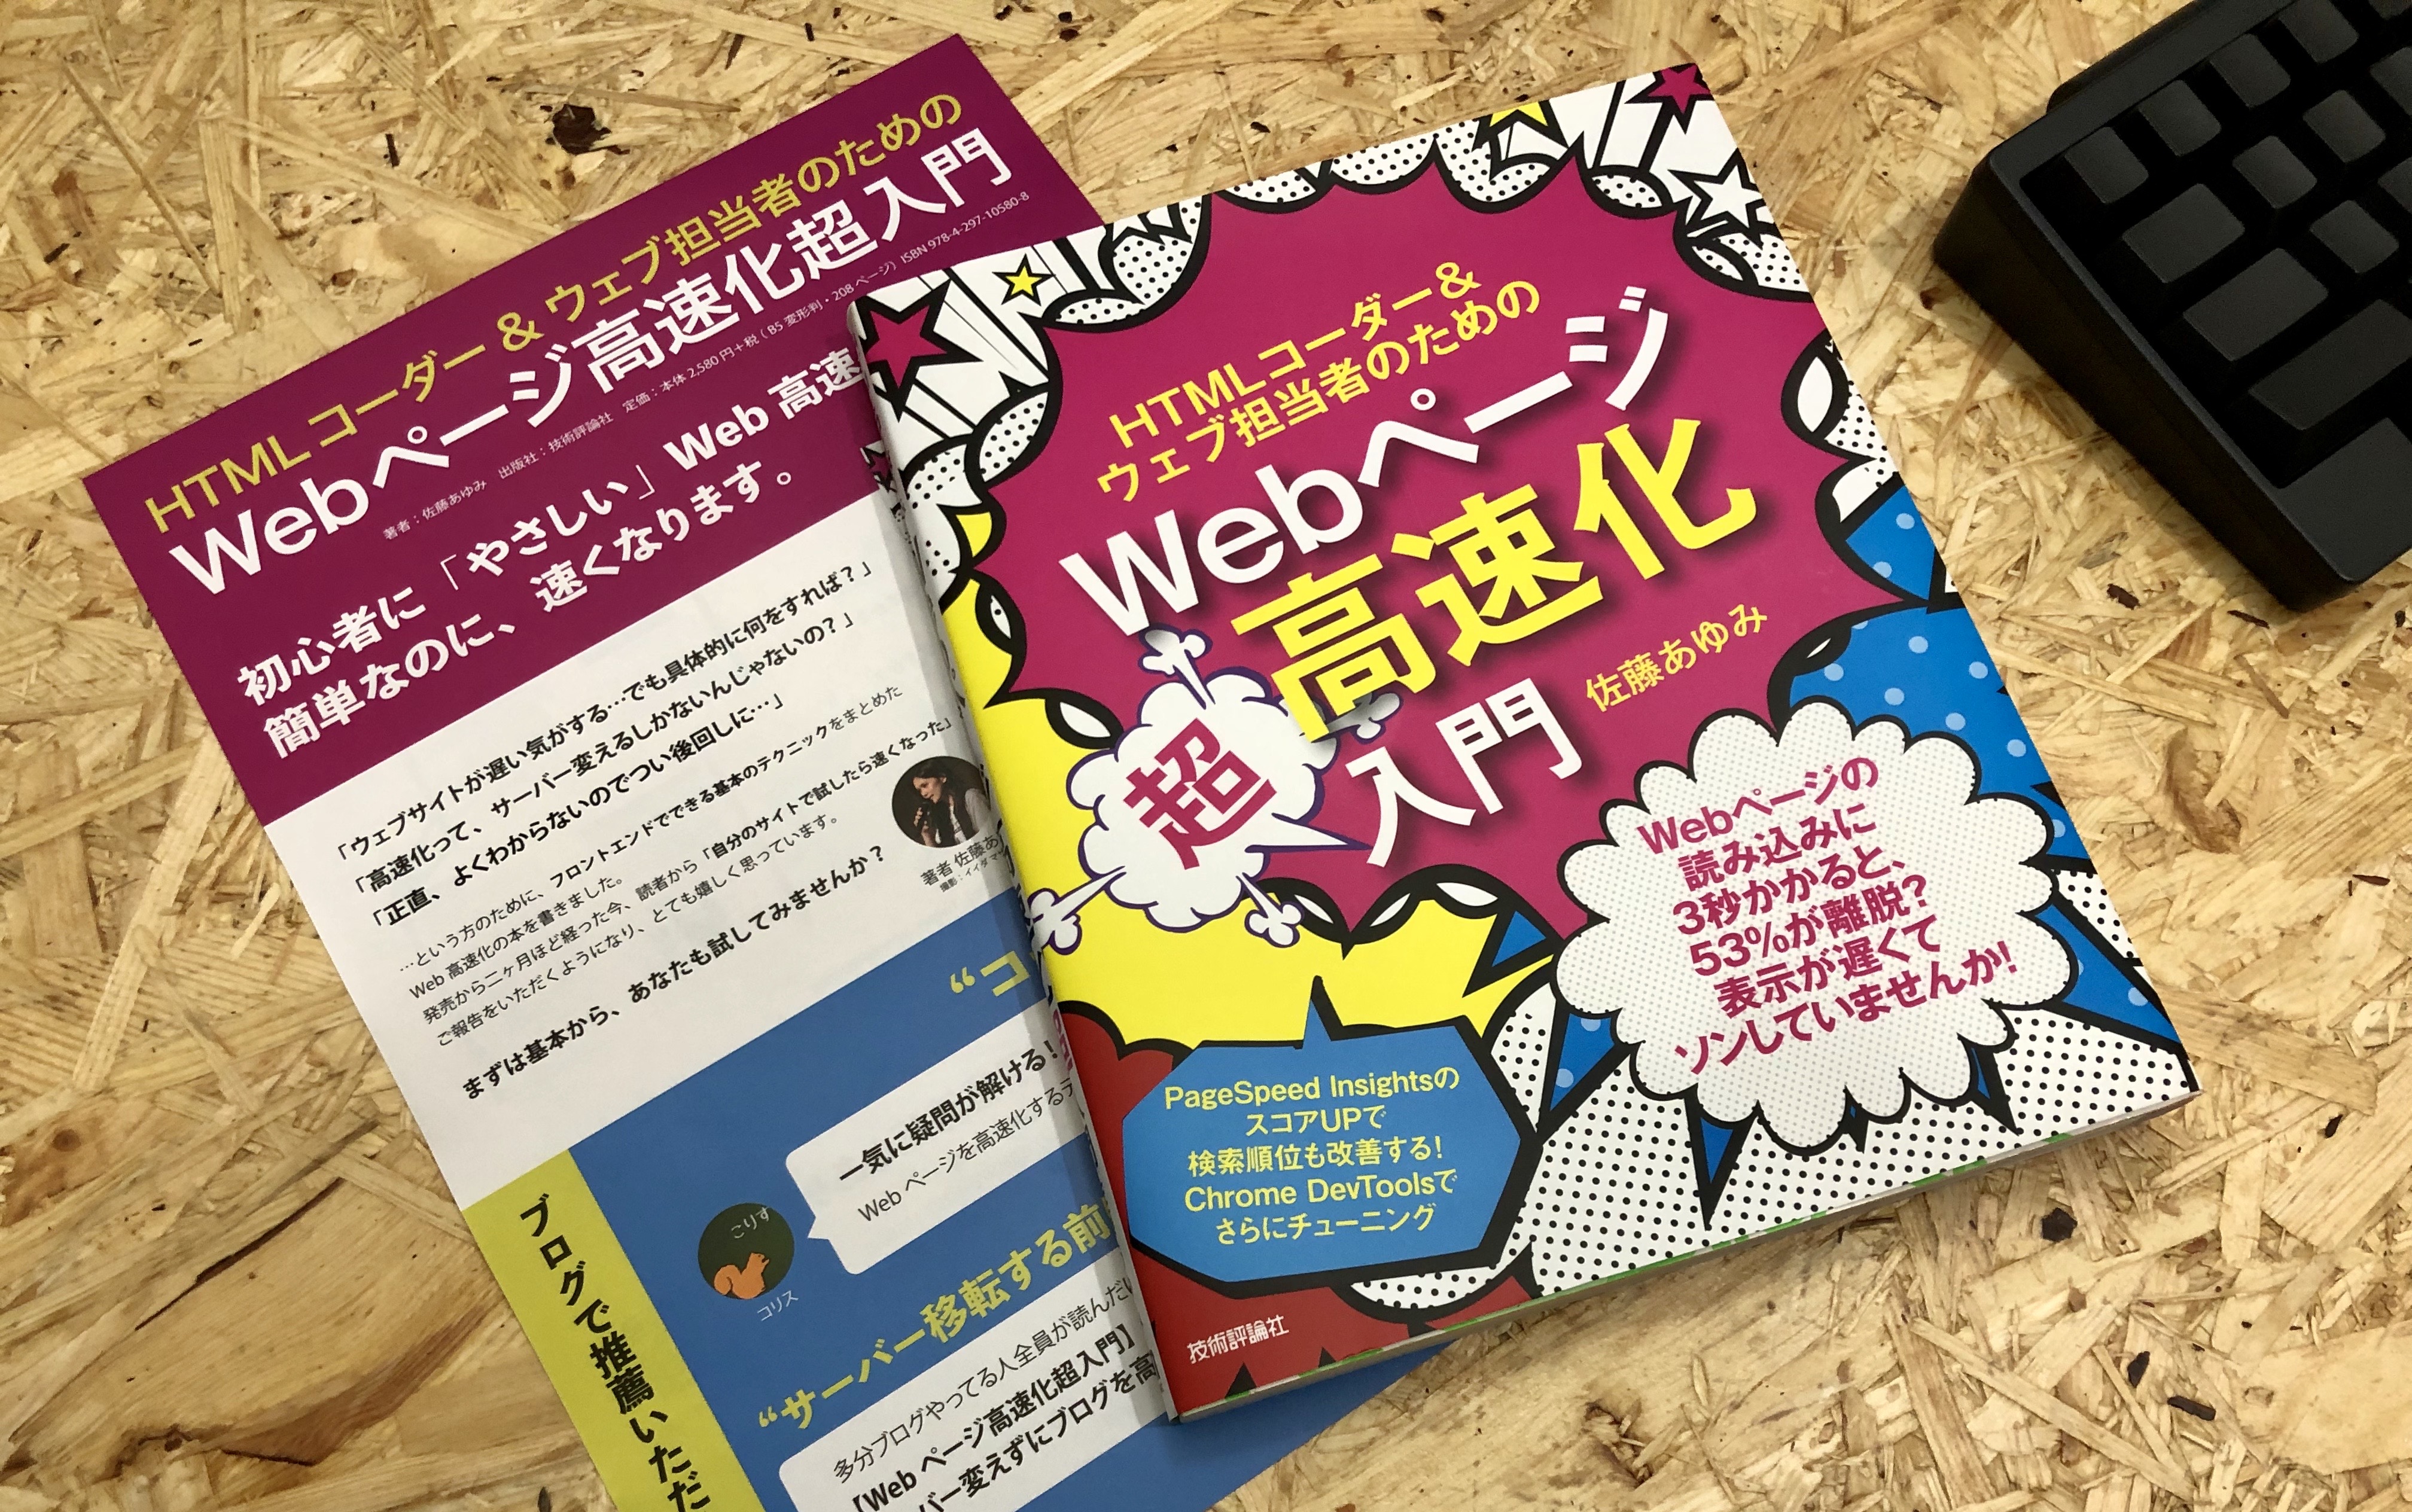 書籍「HTMLコーダー&ウェブ担当者のためのWebページ高速化超入門」発売